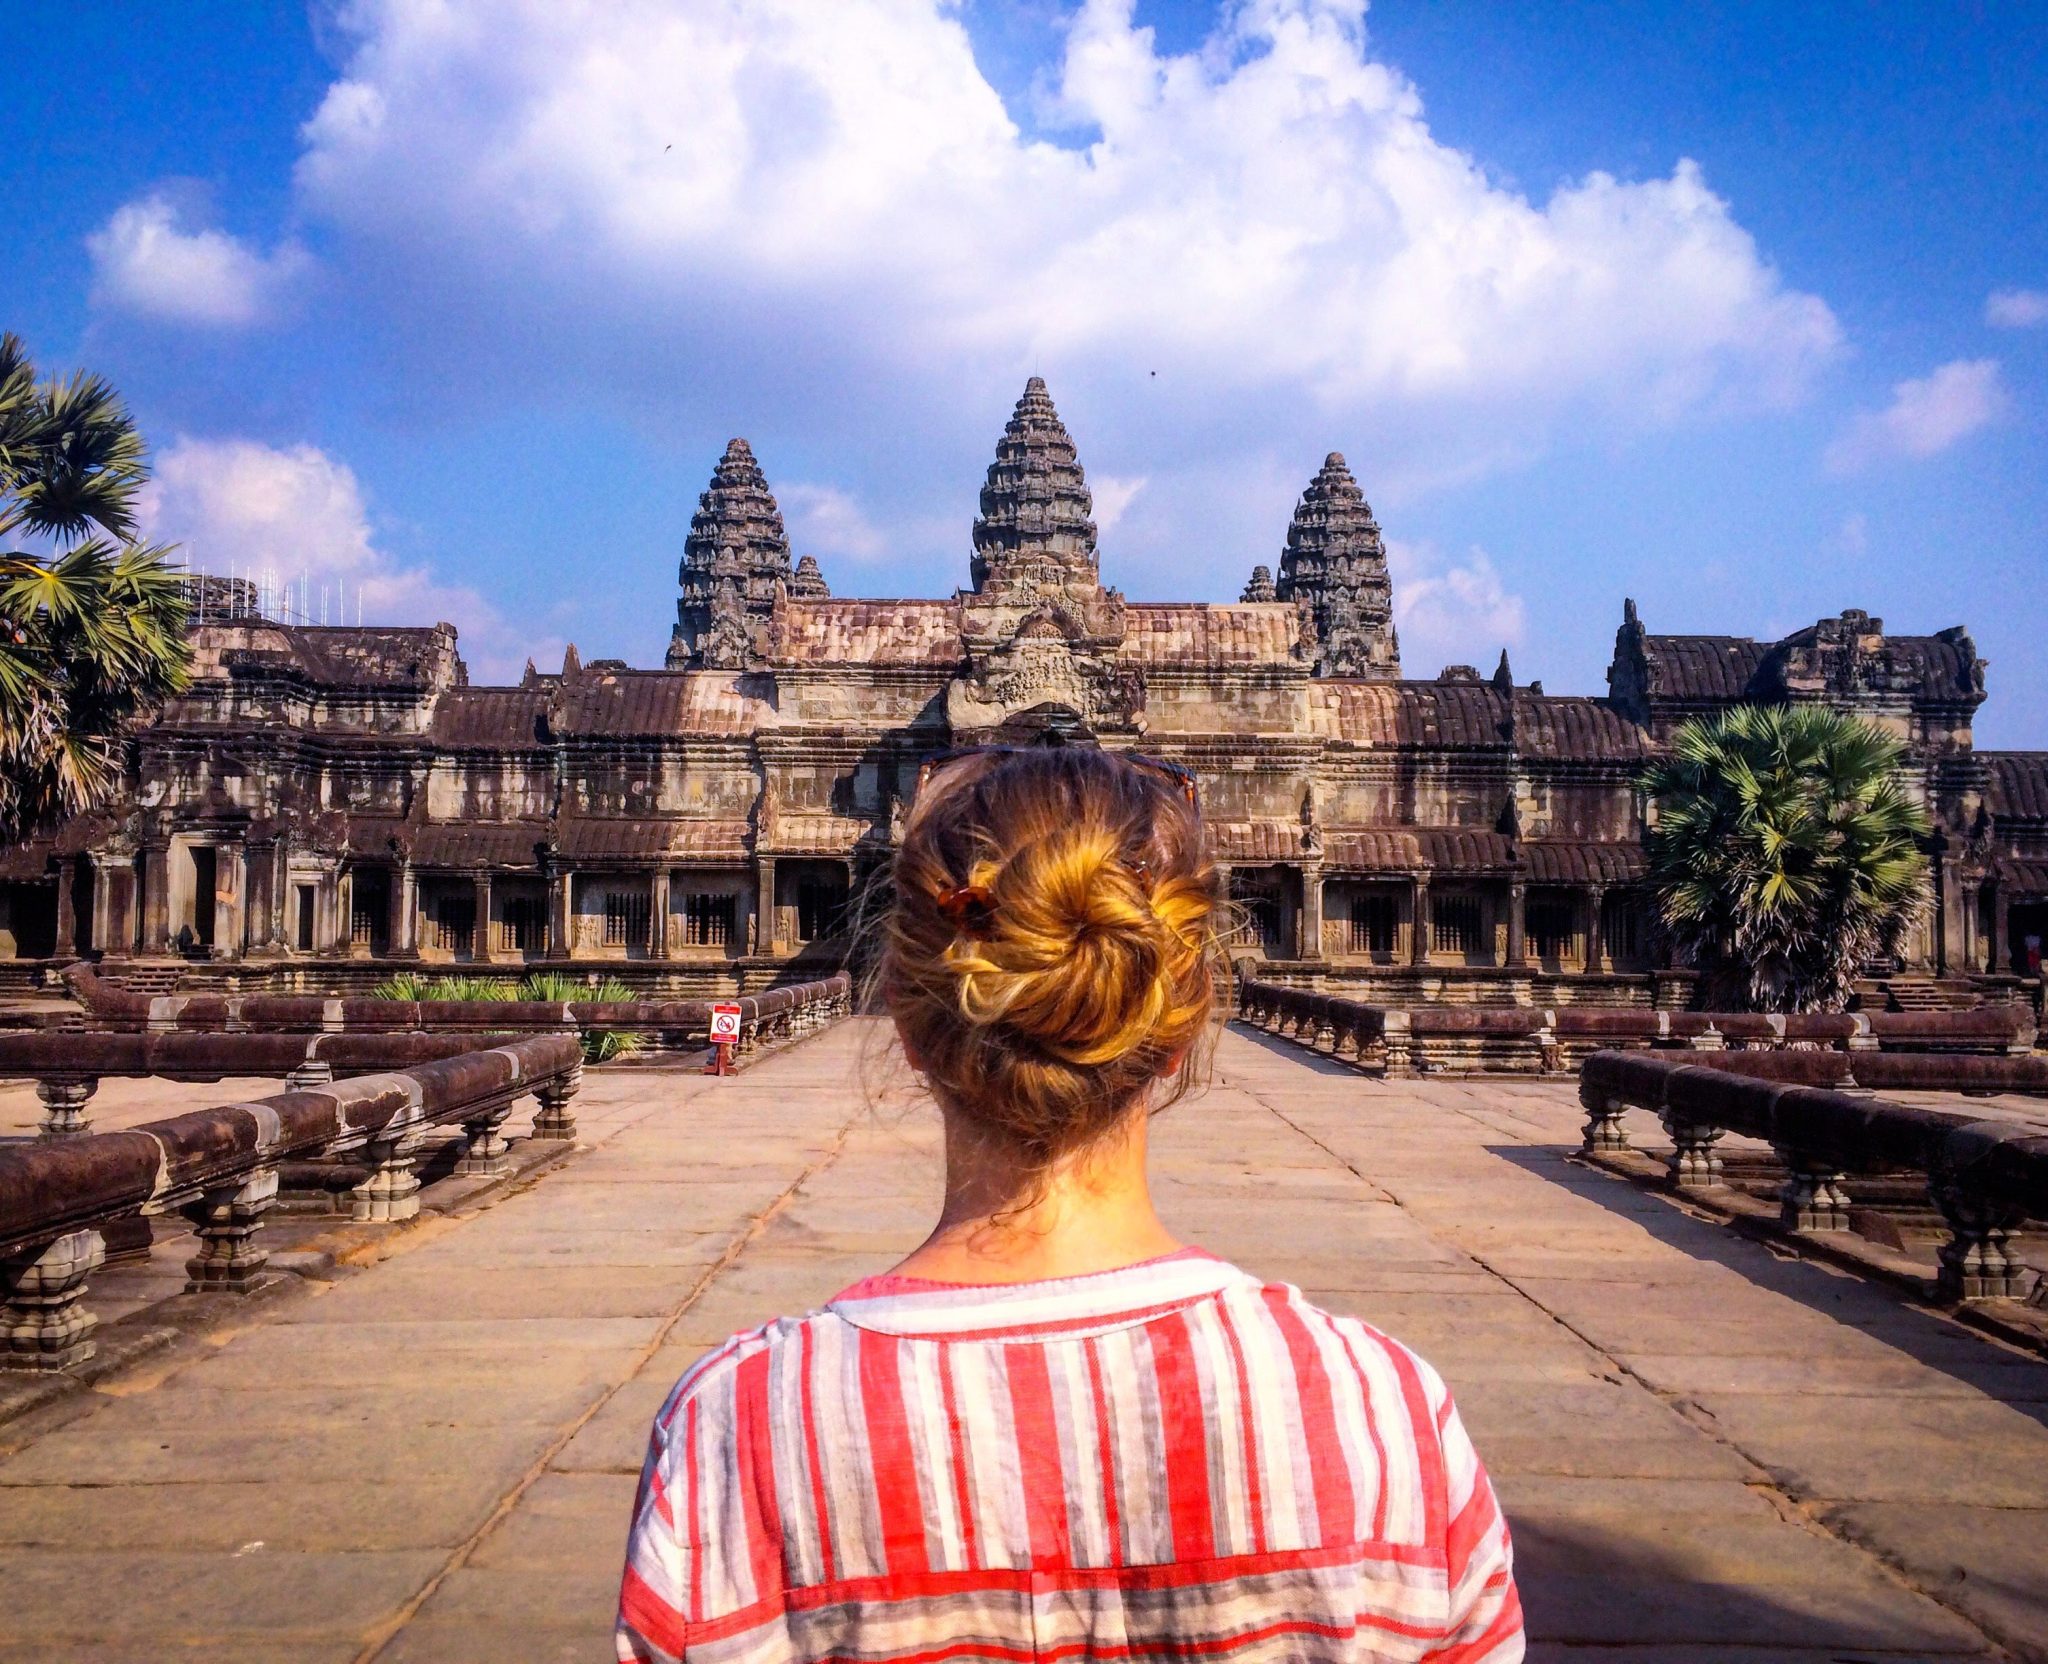 Cambodia travel advice